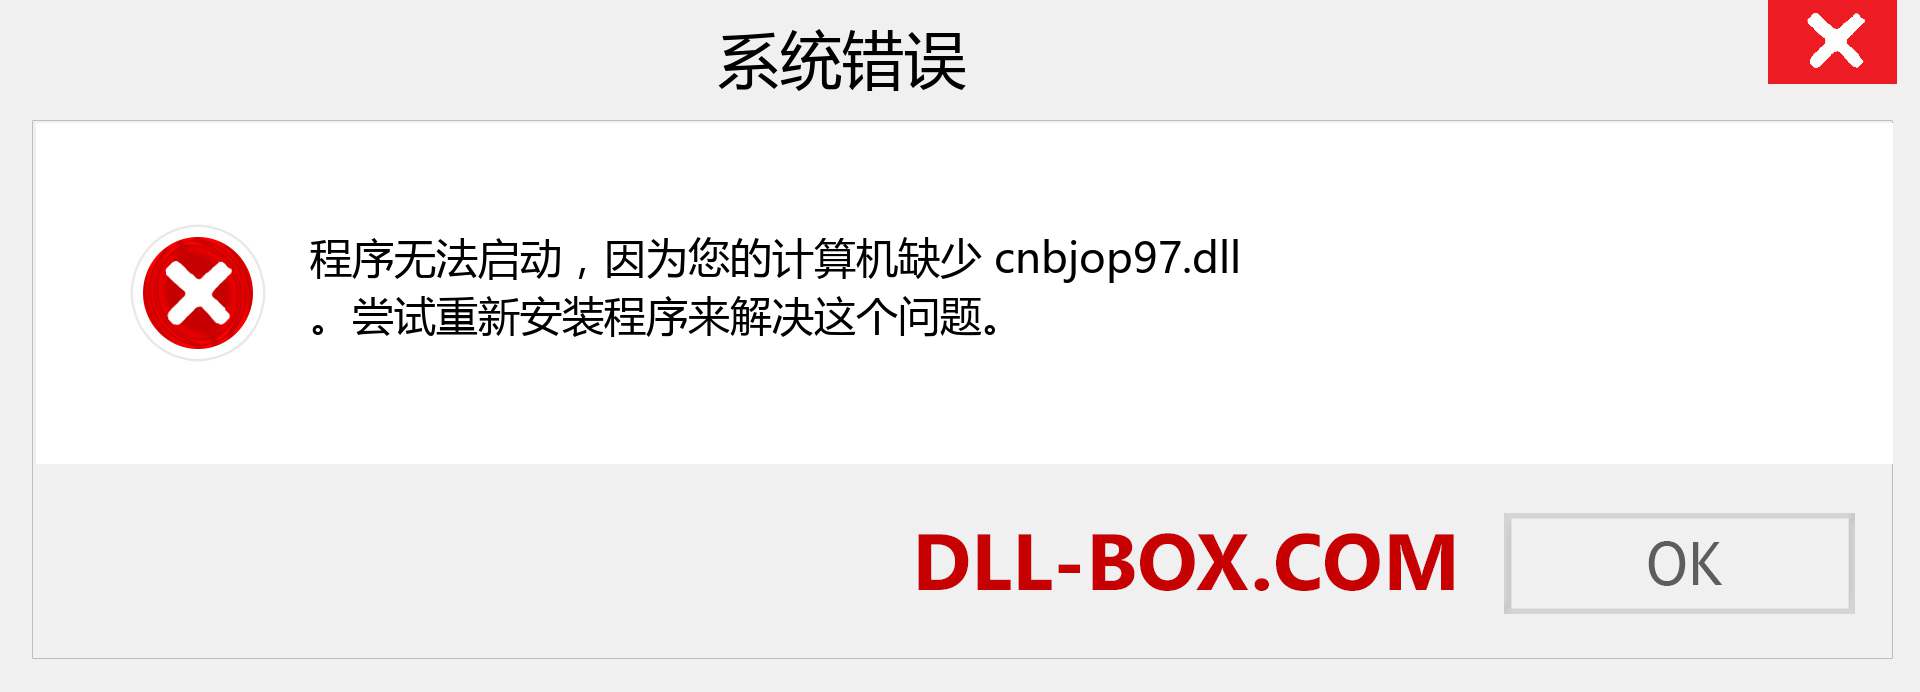 cnbjop97.dll 文件丢失？。 适用于 Windows 7、8、10 的下载 - 修复 Windows、照片、图像上的 cnbjop97 dll 丢失错误